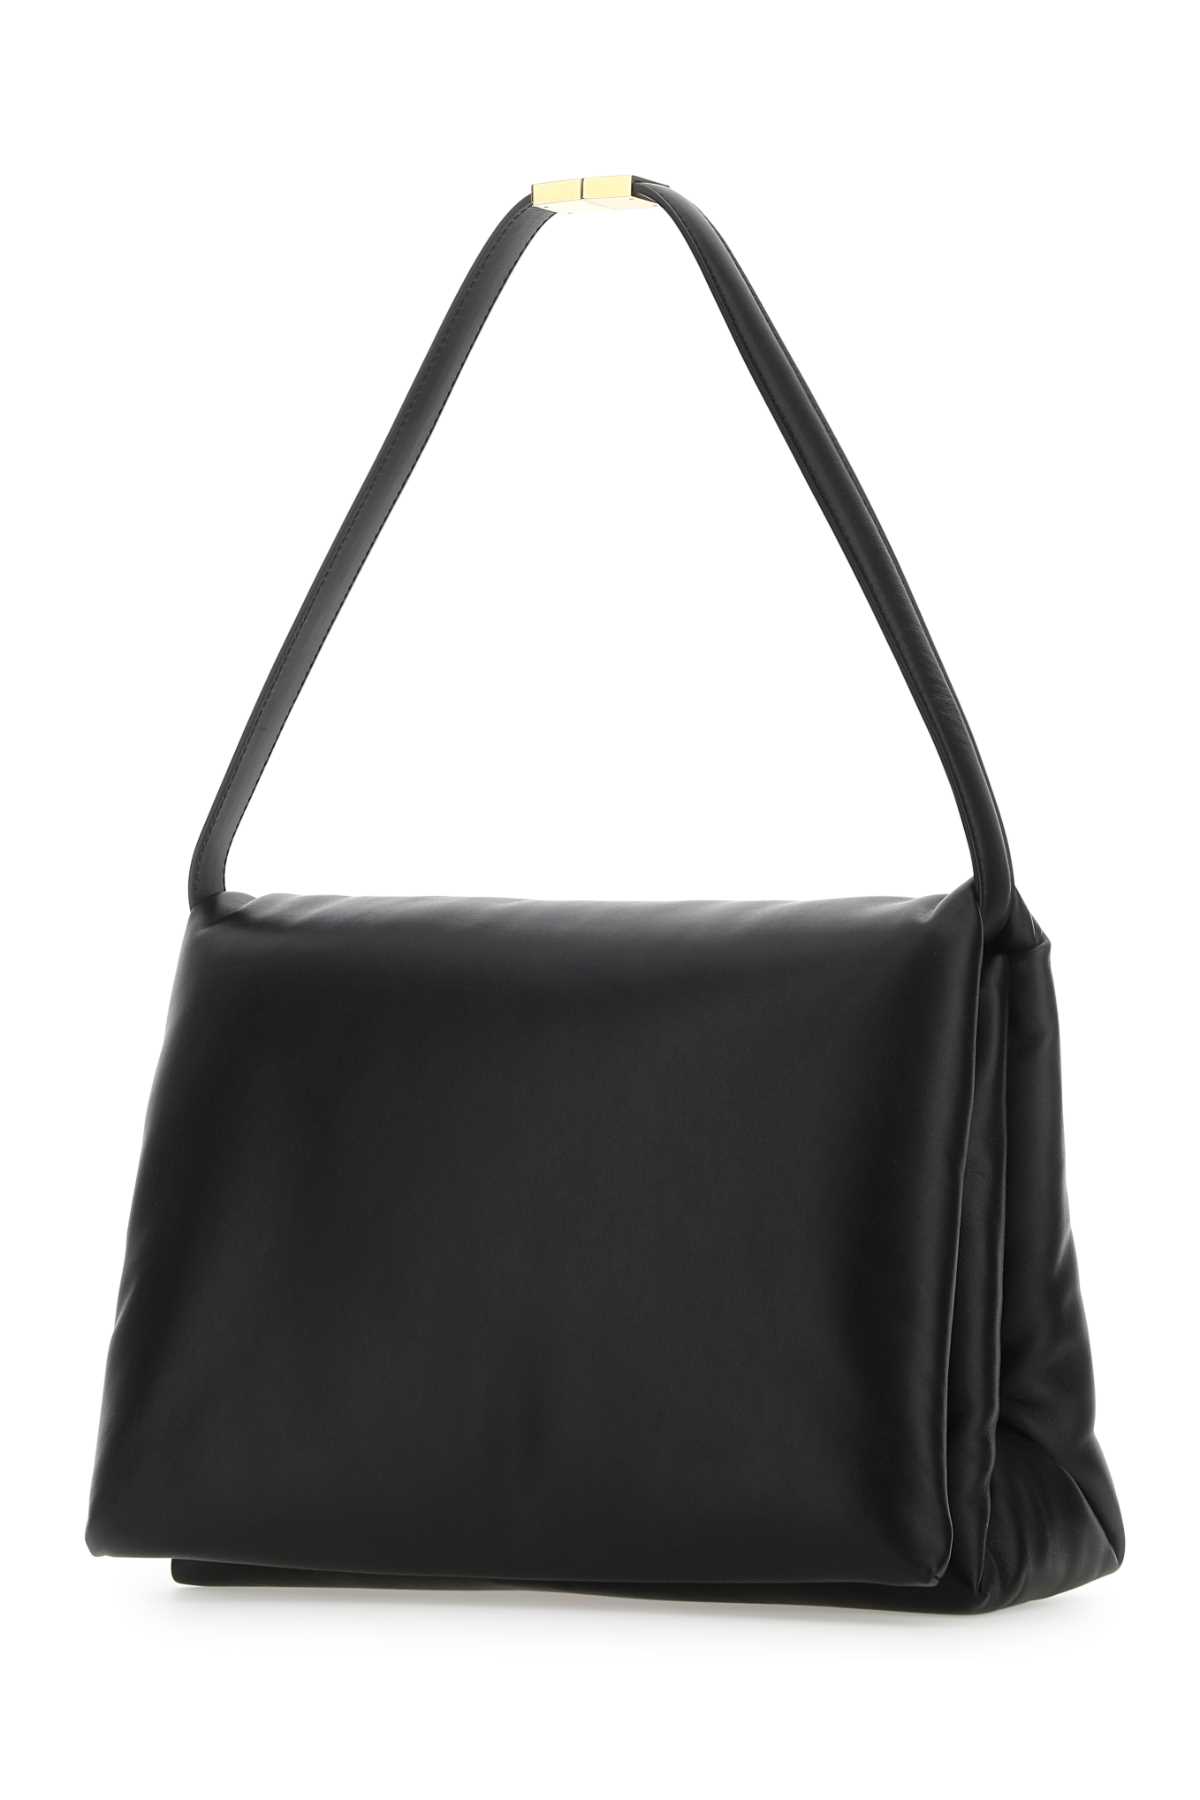 Marni Black Leather Shoulder Bag In 00n99